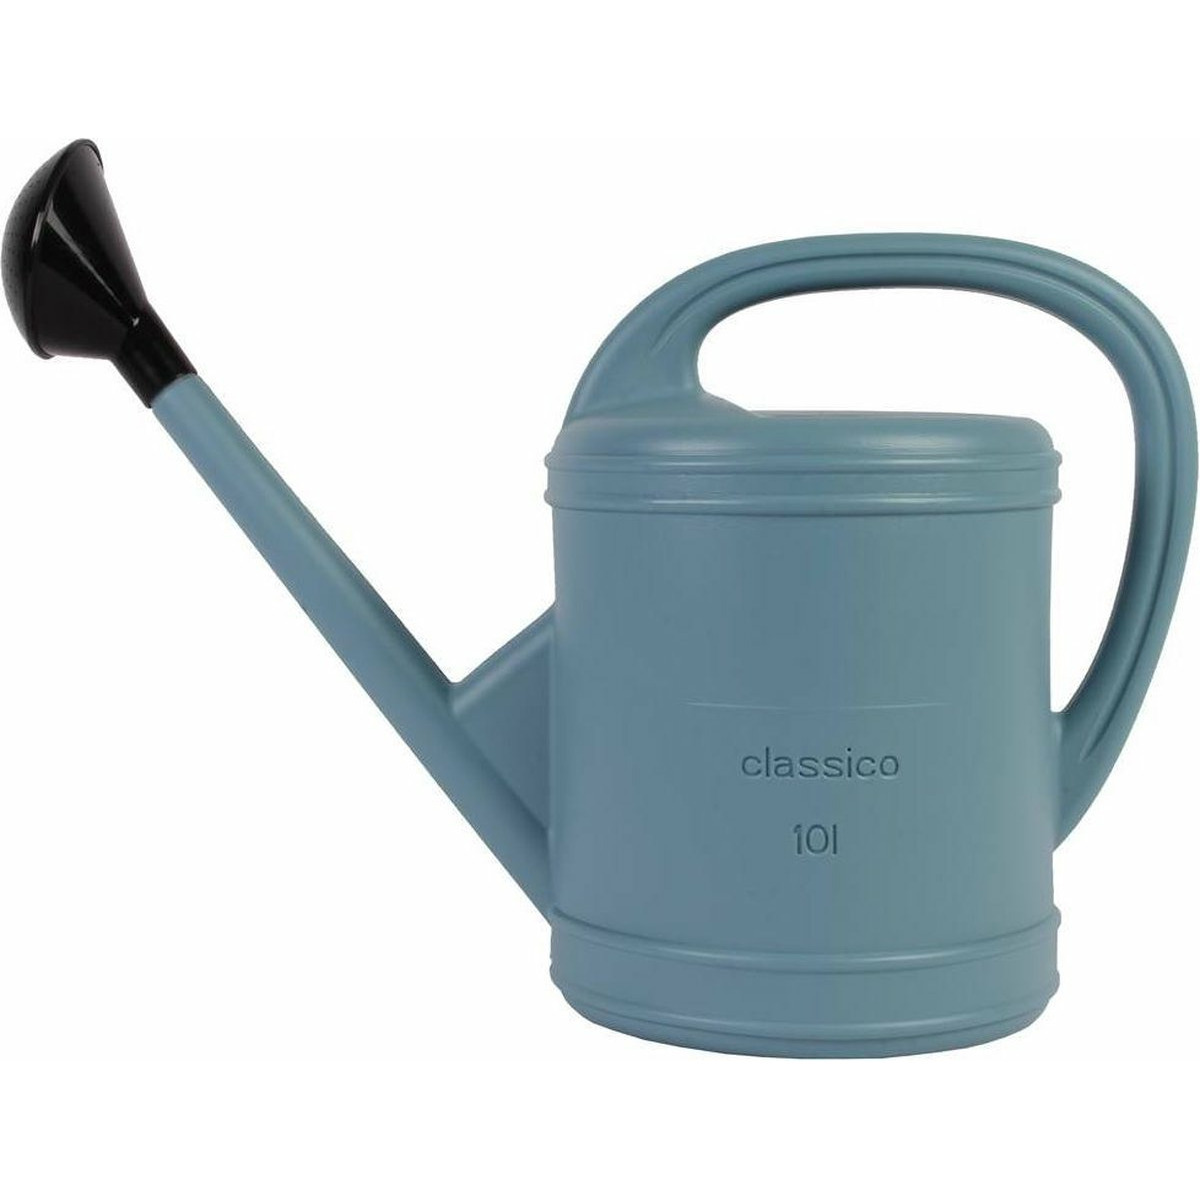 Benson Gieter - kunststof - blauw - 10 liter - voor binnen/buiten -